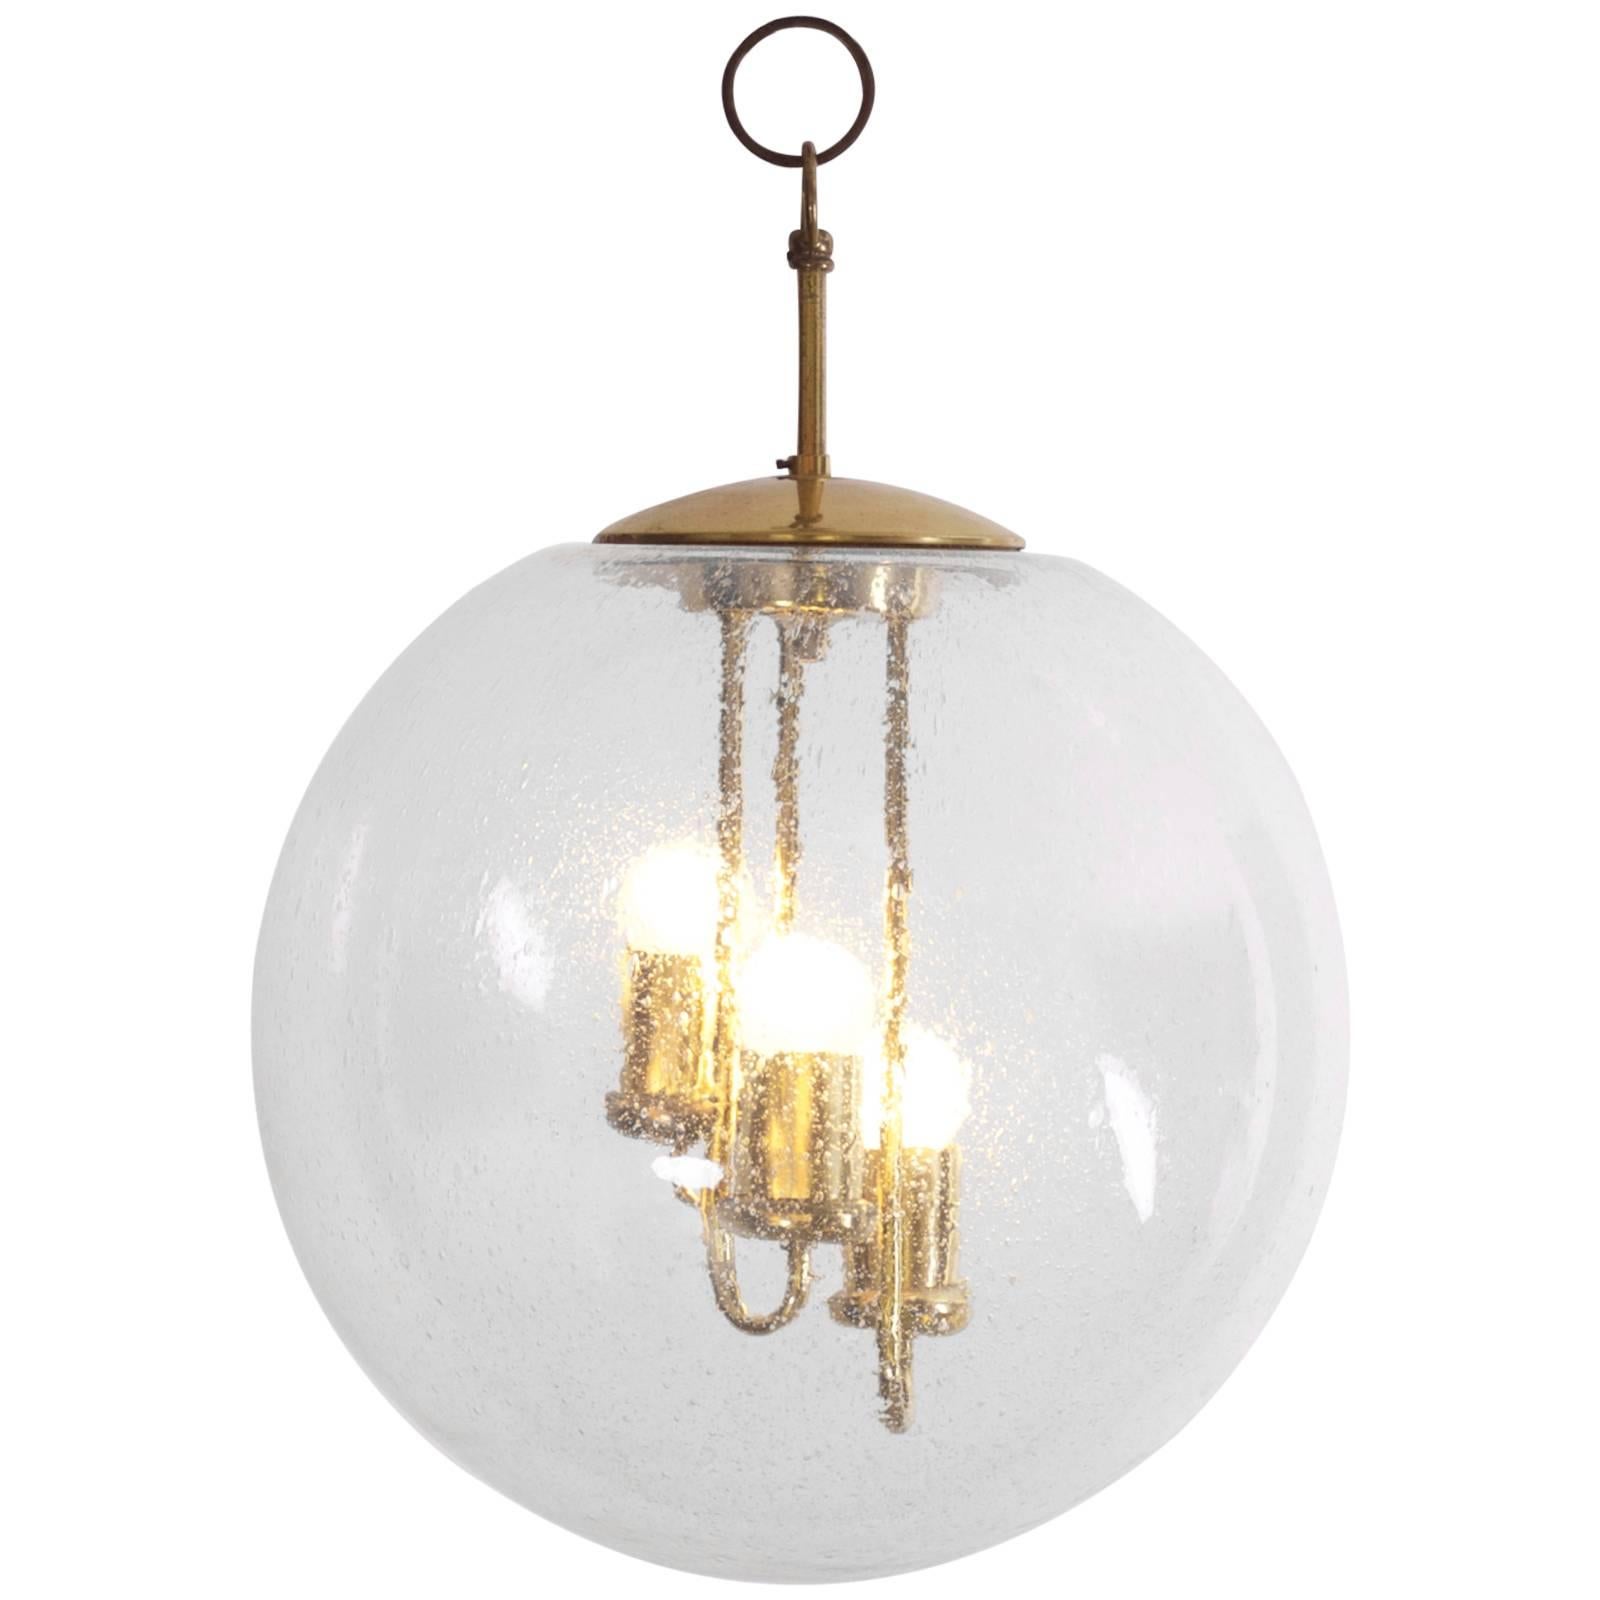 Huge Round Brass Sputnik Chandelier or Pendant Lamp by Doria For Sale